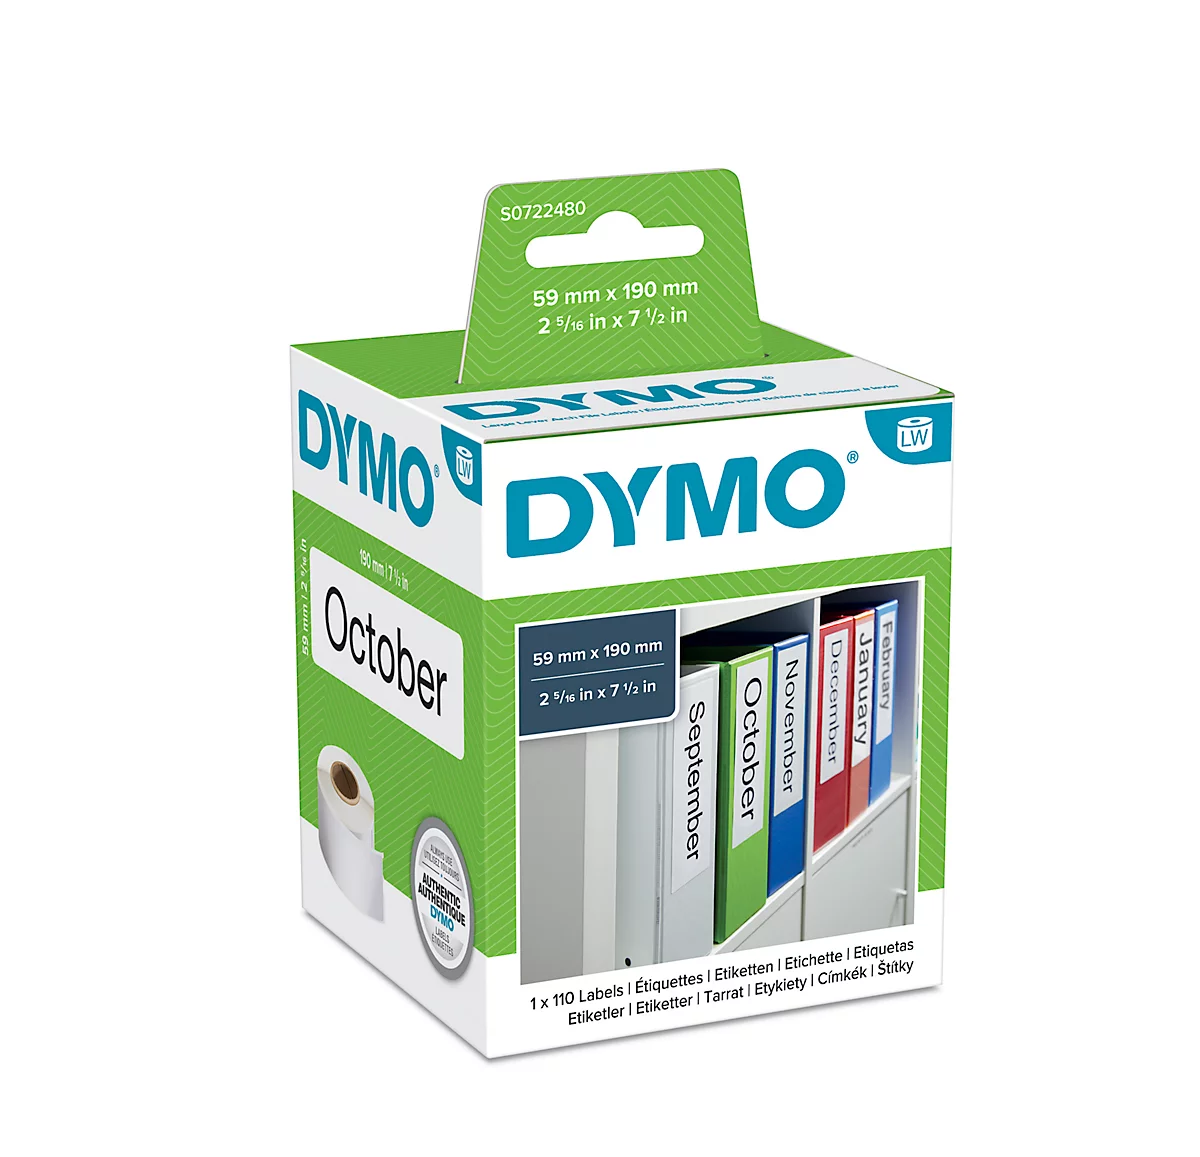 DYMO LabelWriter Ordner-Etiketten, permanent, 59 x 190 mm, 110 Stück